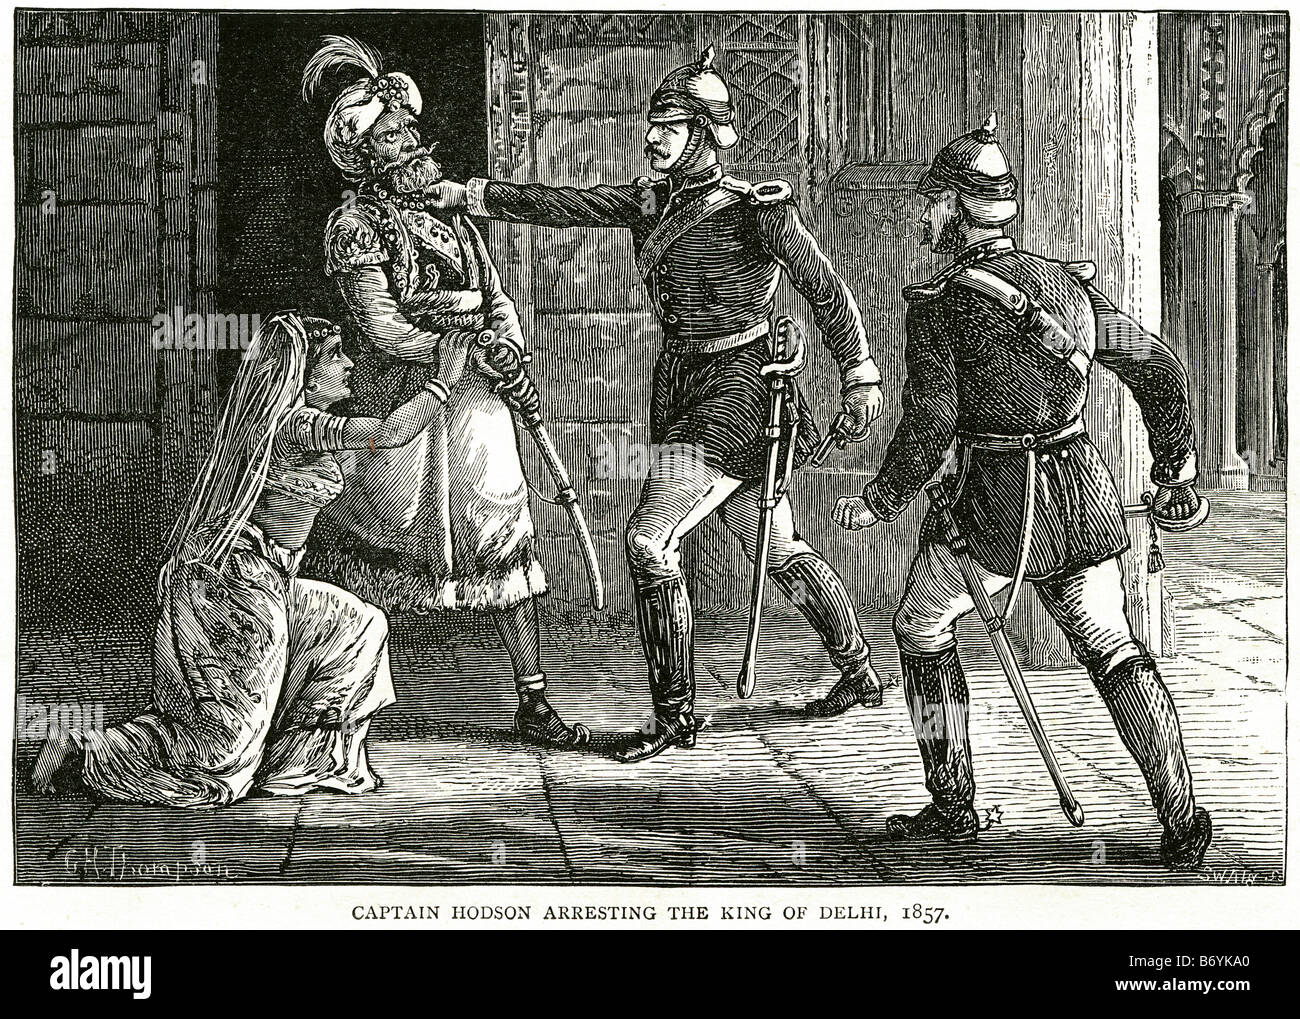 Captain Hodson verhaften König Delhi 1857 Raj britischer Soldat Verhaftung Gesetz Schwert einheitliche offizielle britische waren langsam, um b zu schlagen Stockfoto